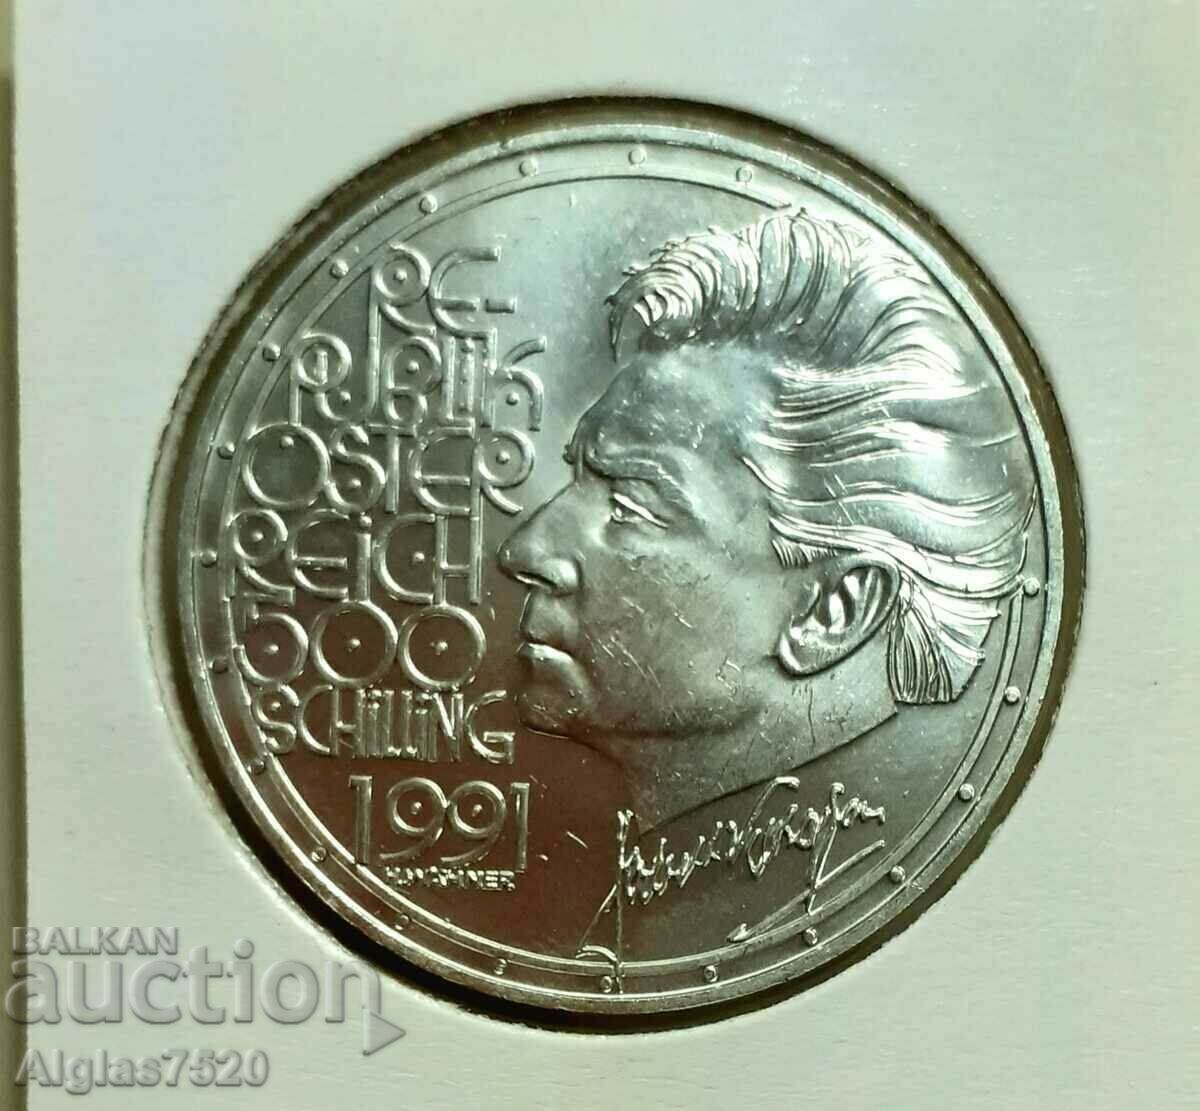 500 шилинга/сребро/Австрия 1991г.UNC